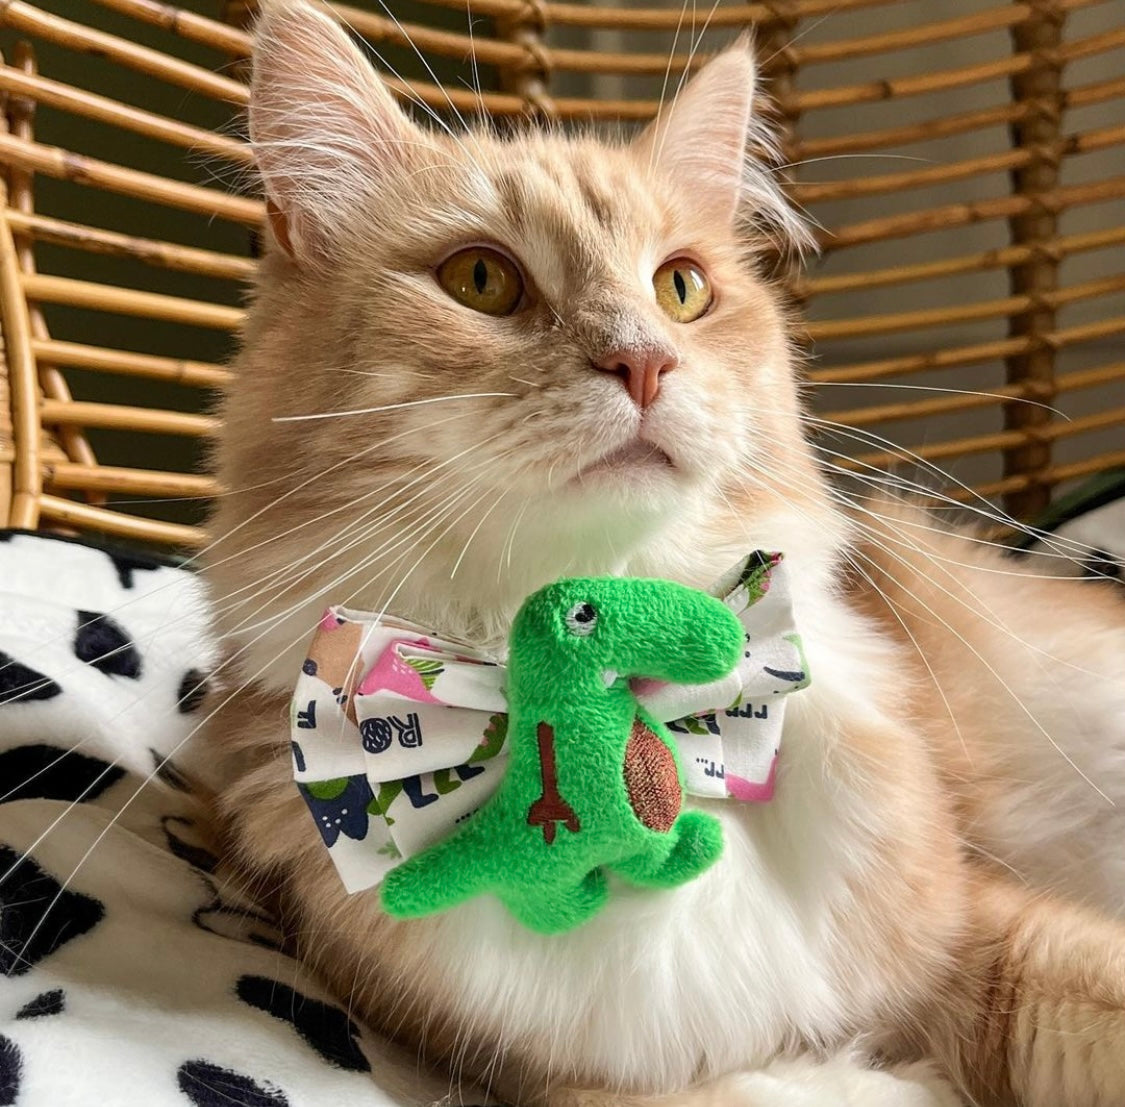 Katzenmodel trägt weiße handgemachte Katzenschleife mit grünem Dino